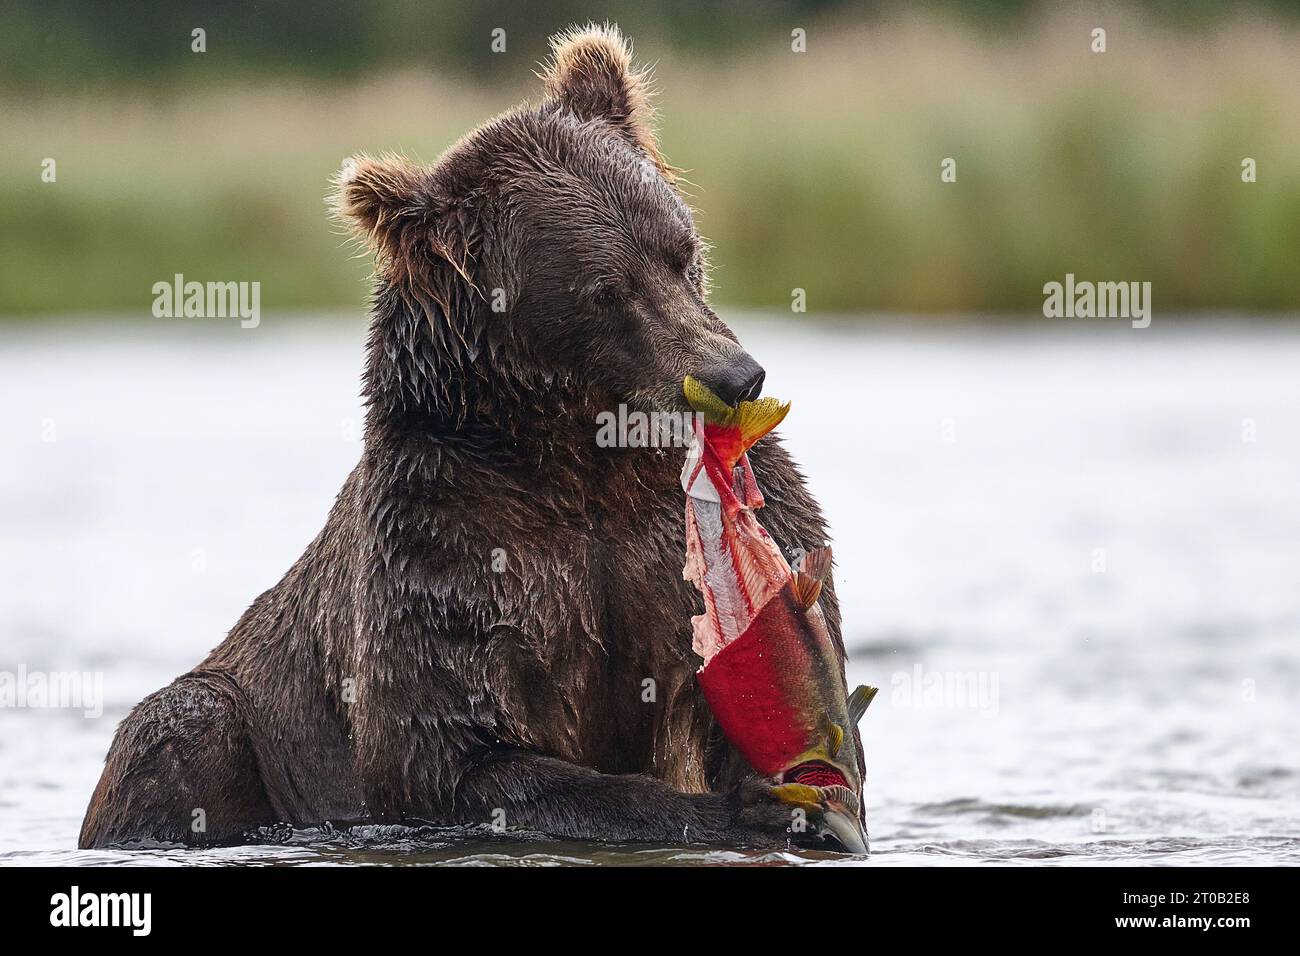 Bär isst einen rosa Lachs ALASKA AUFREGENDE Bilder einer Mutter Kodiak Bär mit ihren beiden Jungen zeigen den ?Grizzly? Familie genießt süße Familienzeit. Bilder Stockfoto